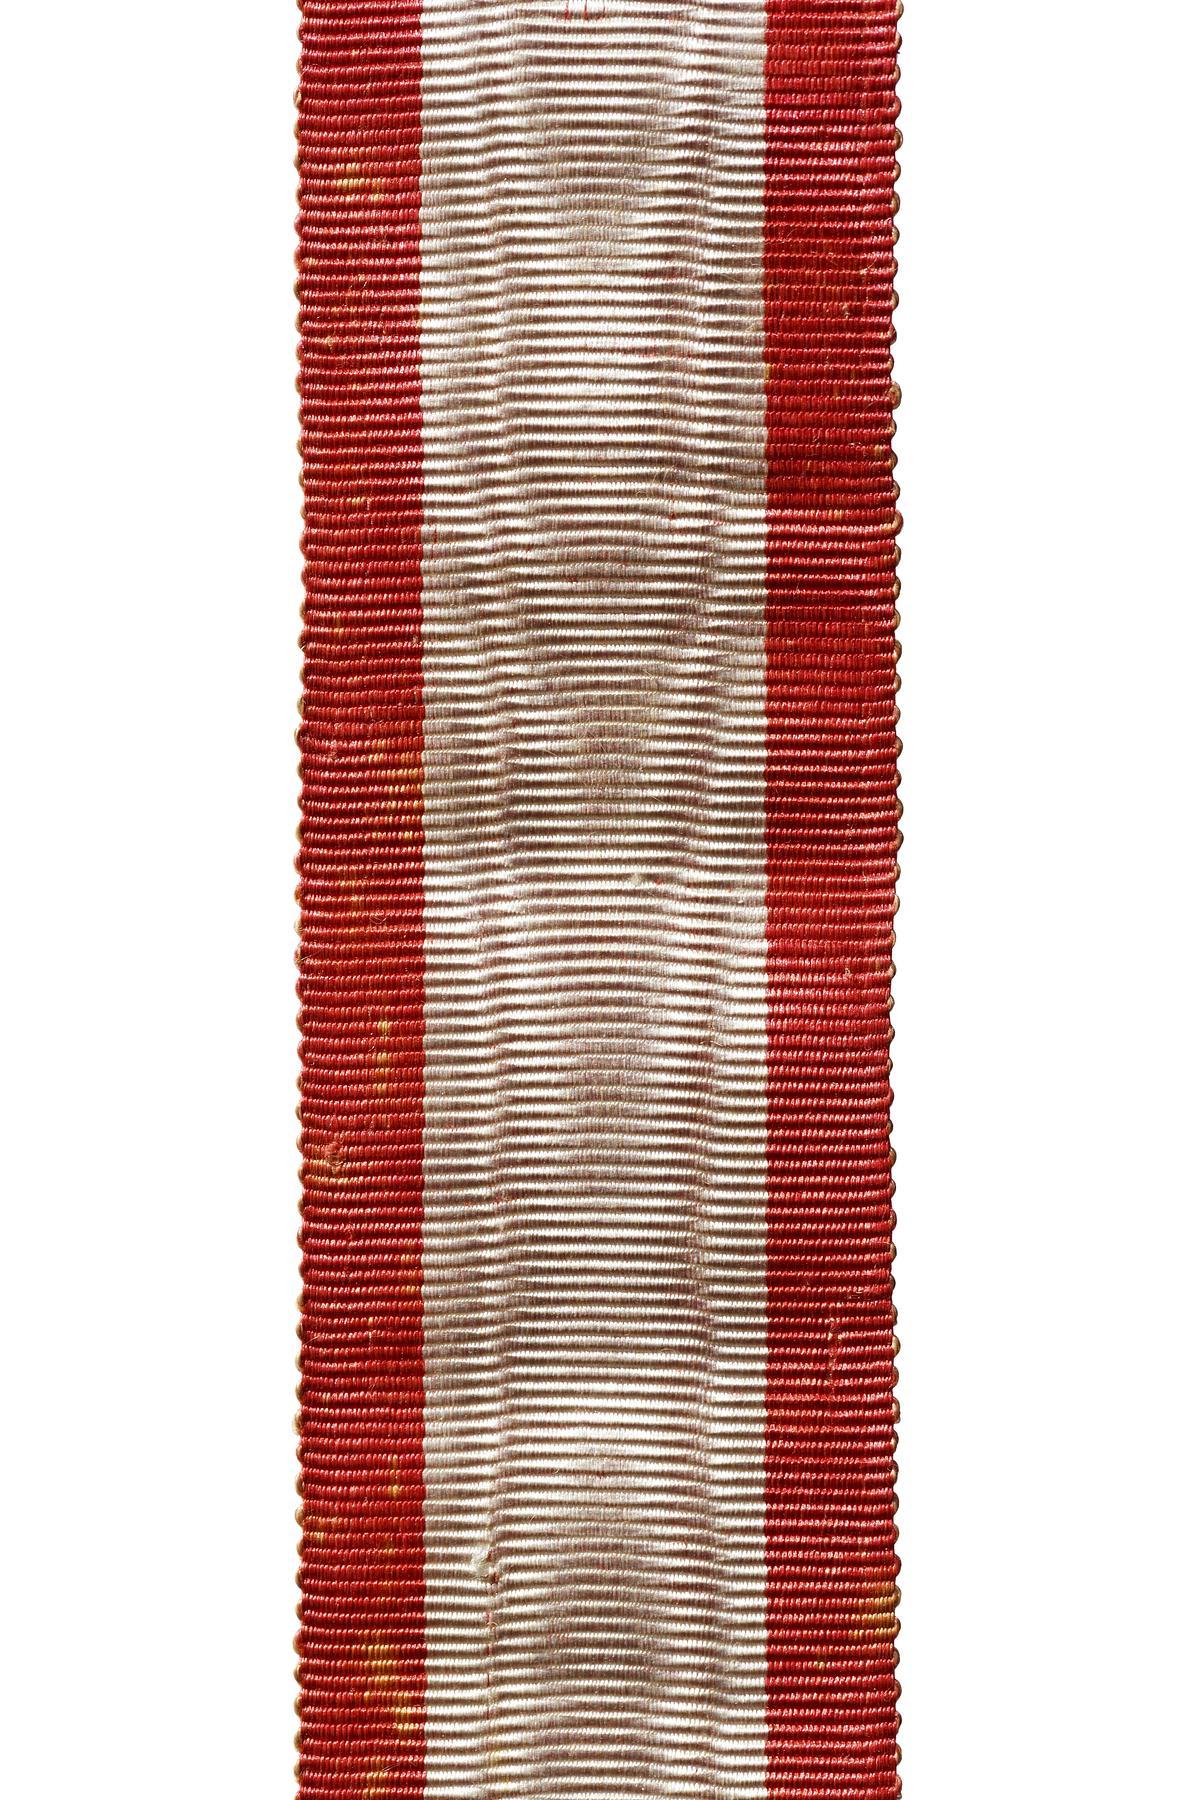 Order of the Dannebrog, N7